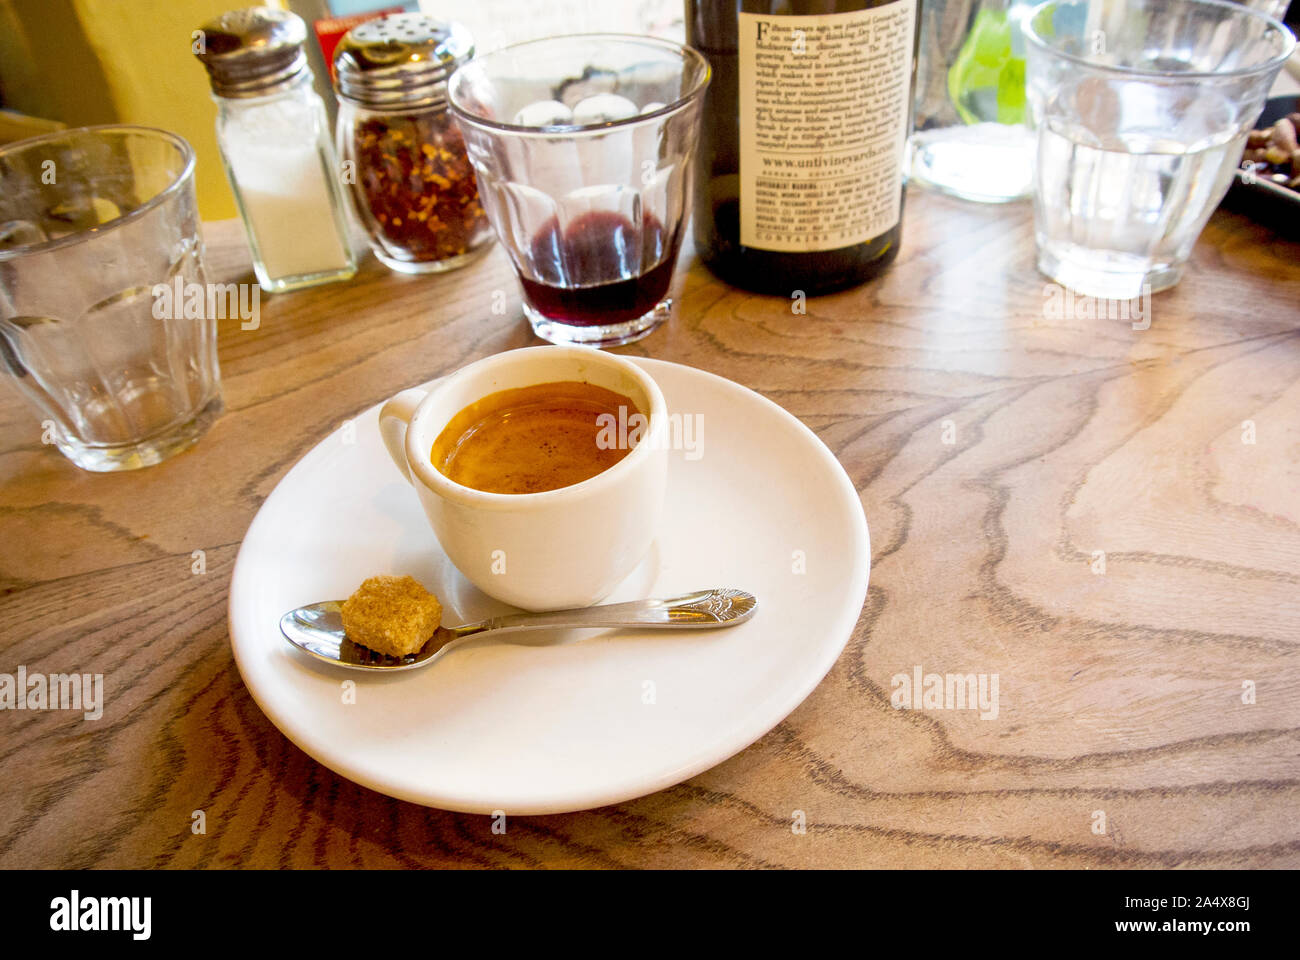 Ein Espresso sitzt auf einer Tabelle nach einer Mahlzeit mit Wein genossen. Stockfoto